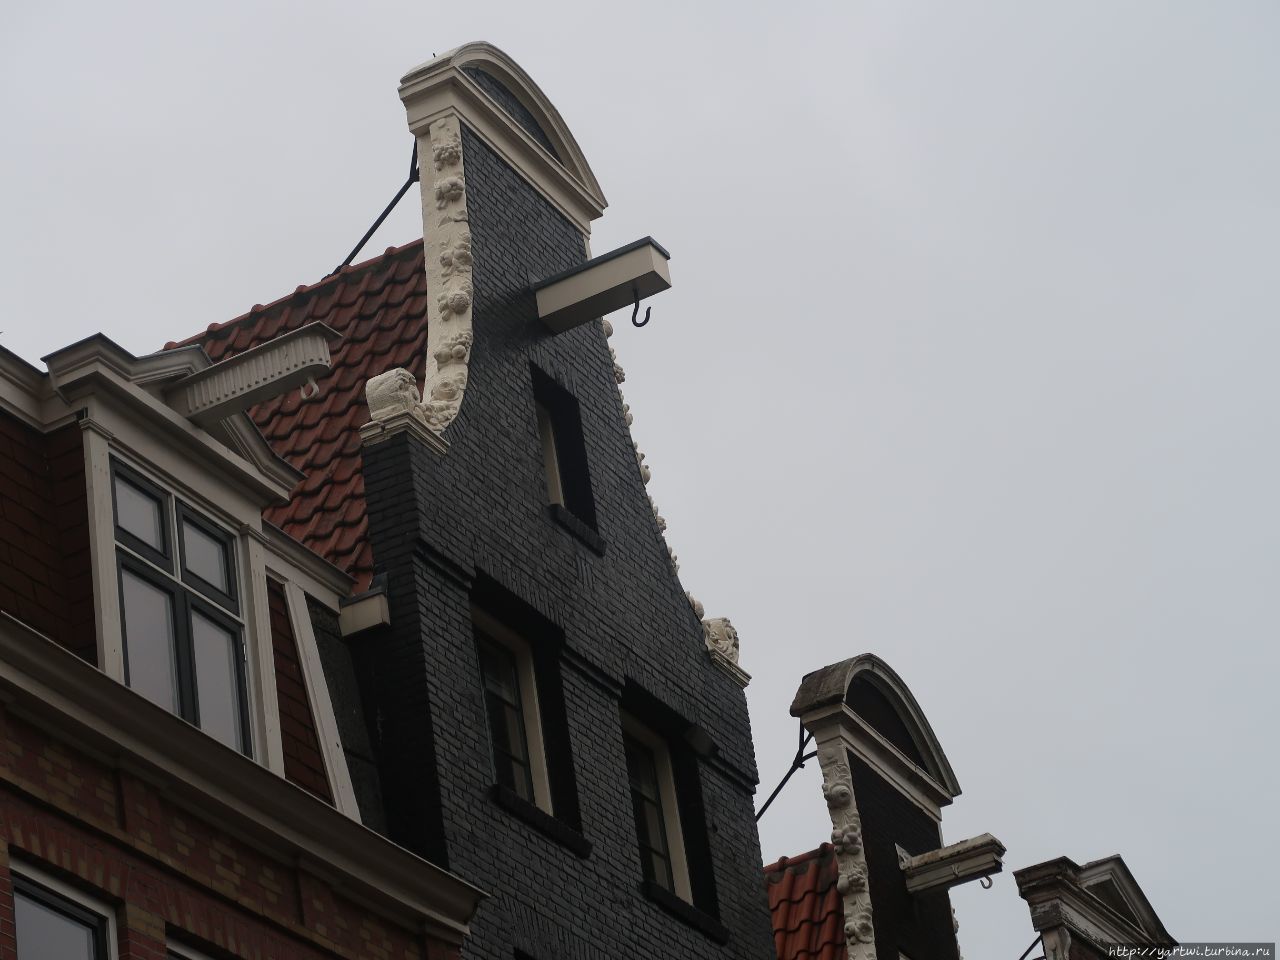 По пути вам обязательно расскажут для чего нужны такие приспособления над каждым подъездом дома в Амстердаме. По дороге, кстати, видим, что штор и занавесок в окнах домов нет. Амстердам, Нидерланды